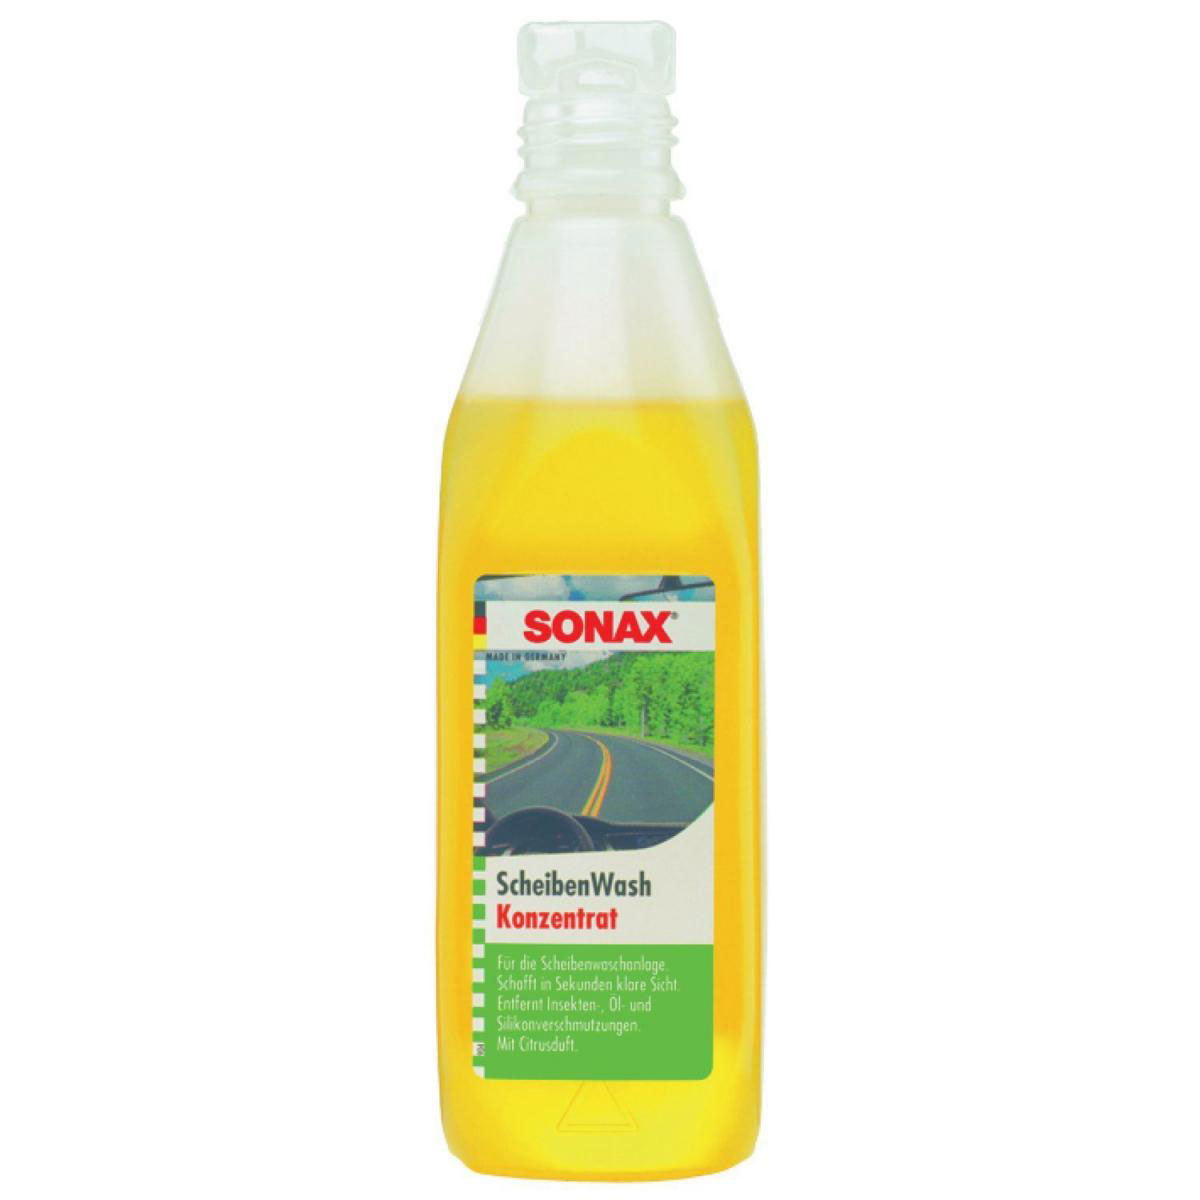 Sonax Scheiben-Reinigungskonzentrat Citrus 250 ml